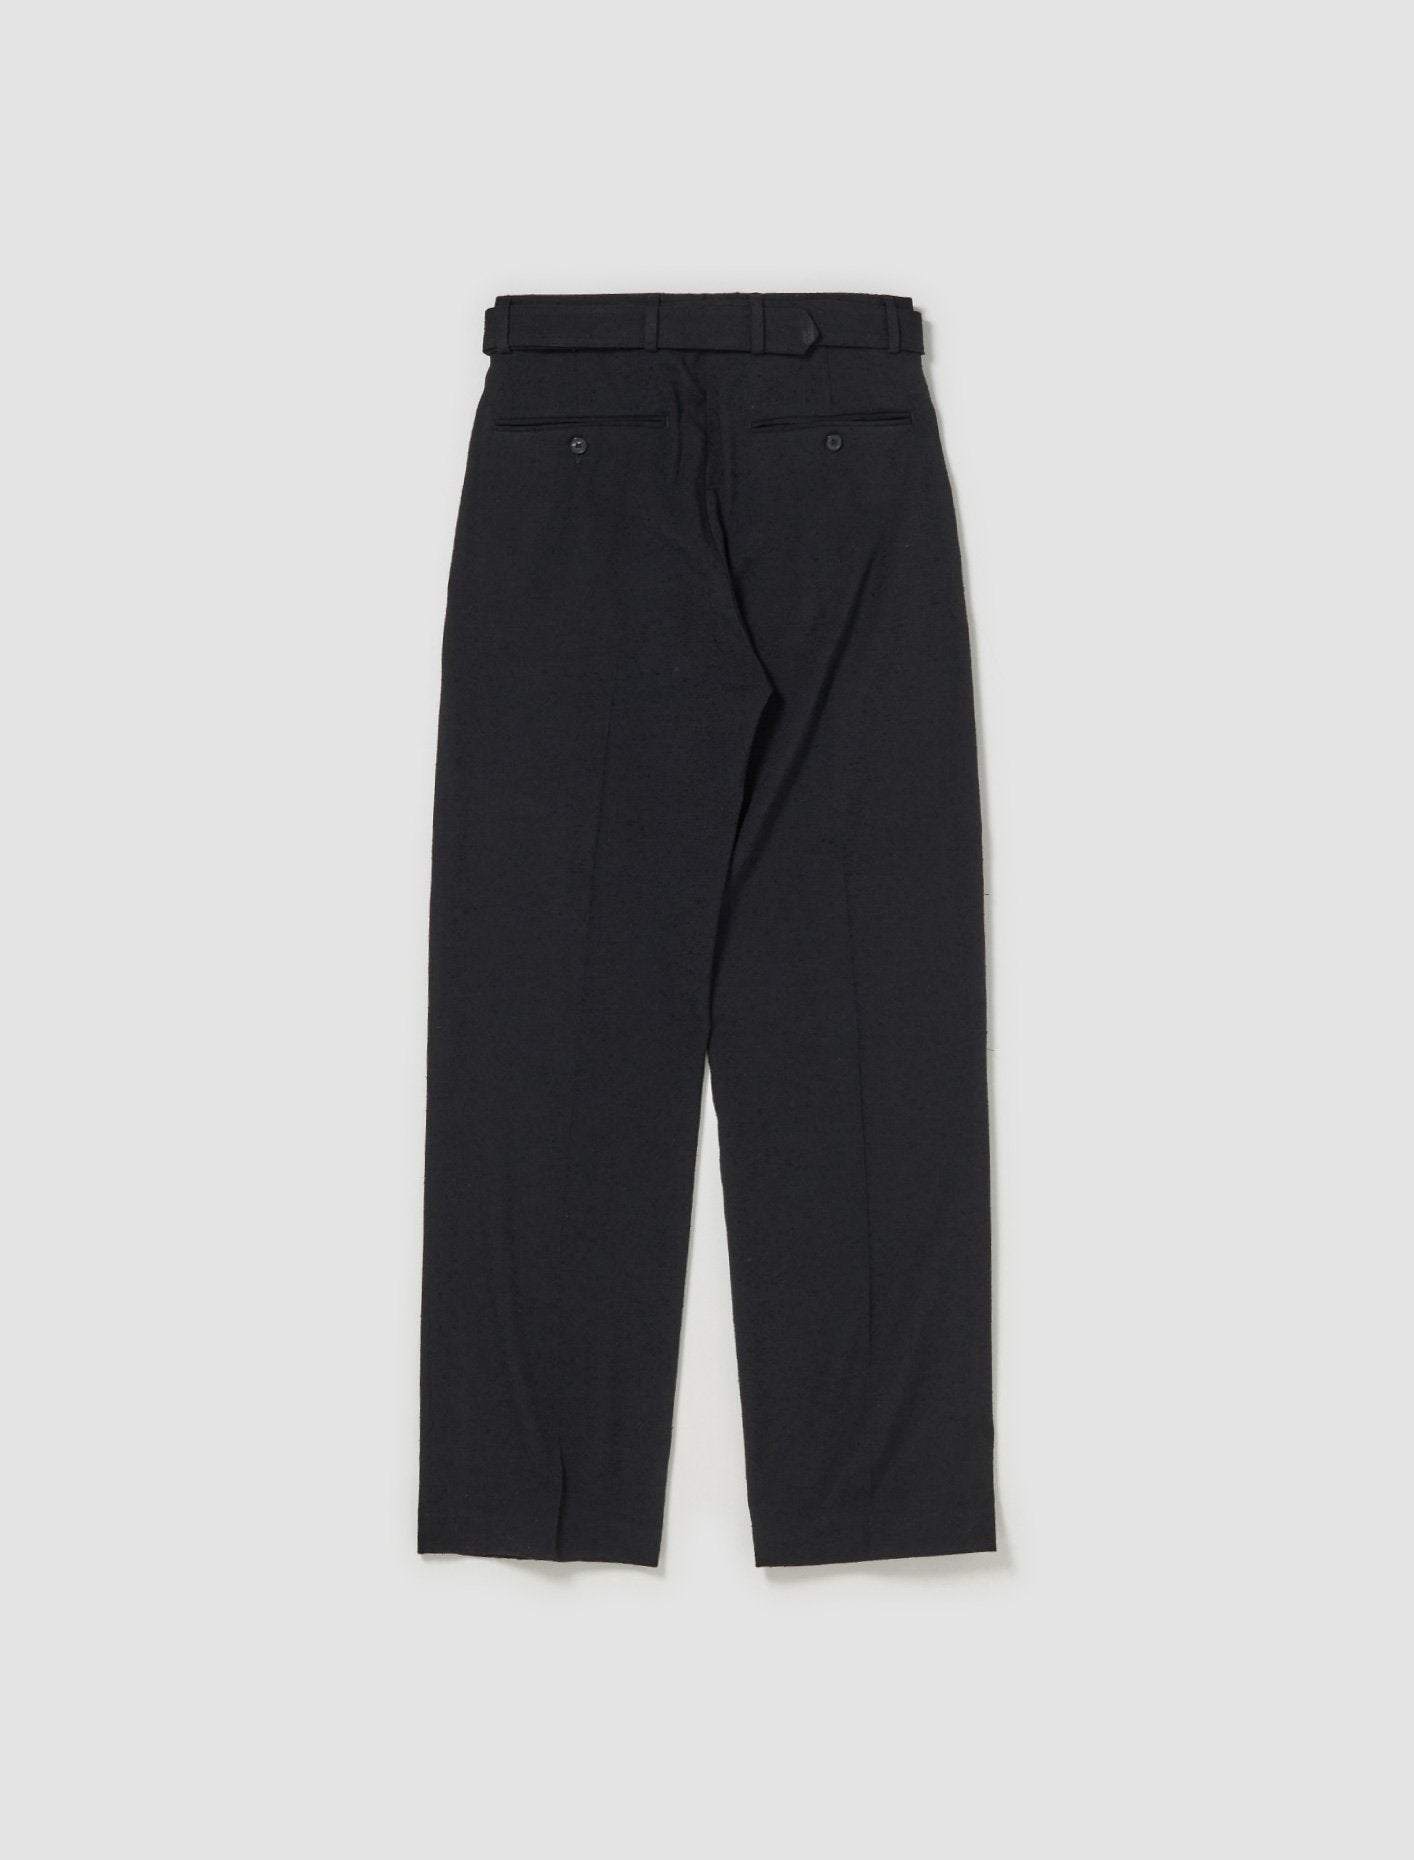 Pyman Pants in Black